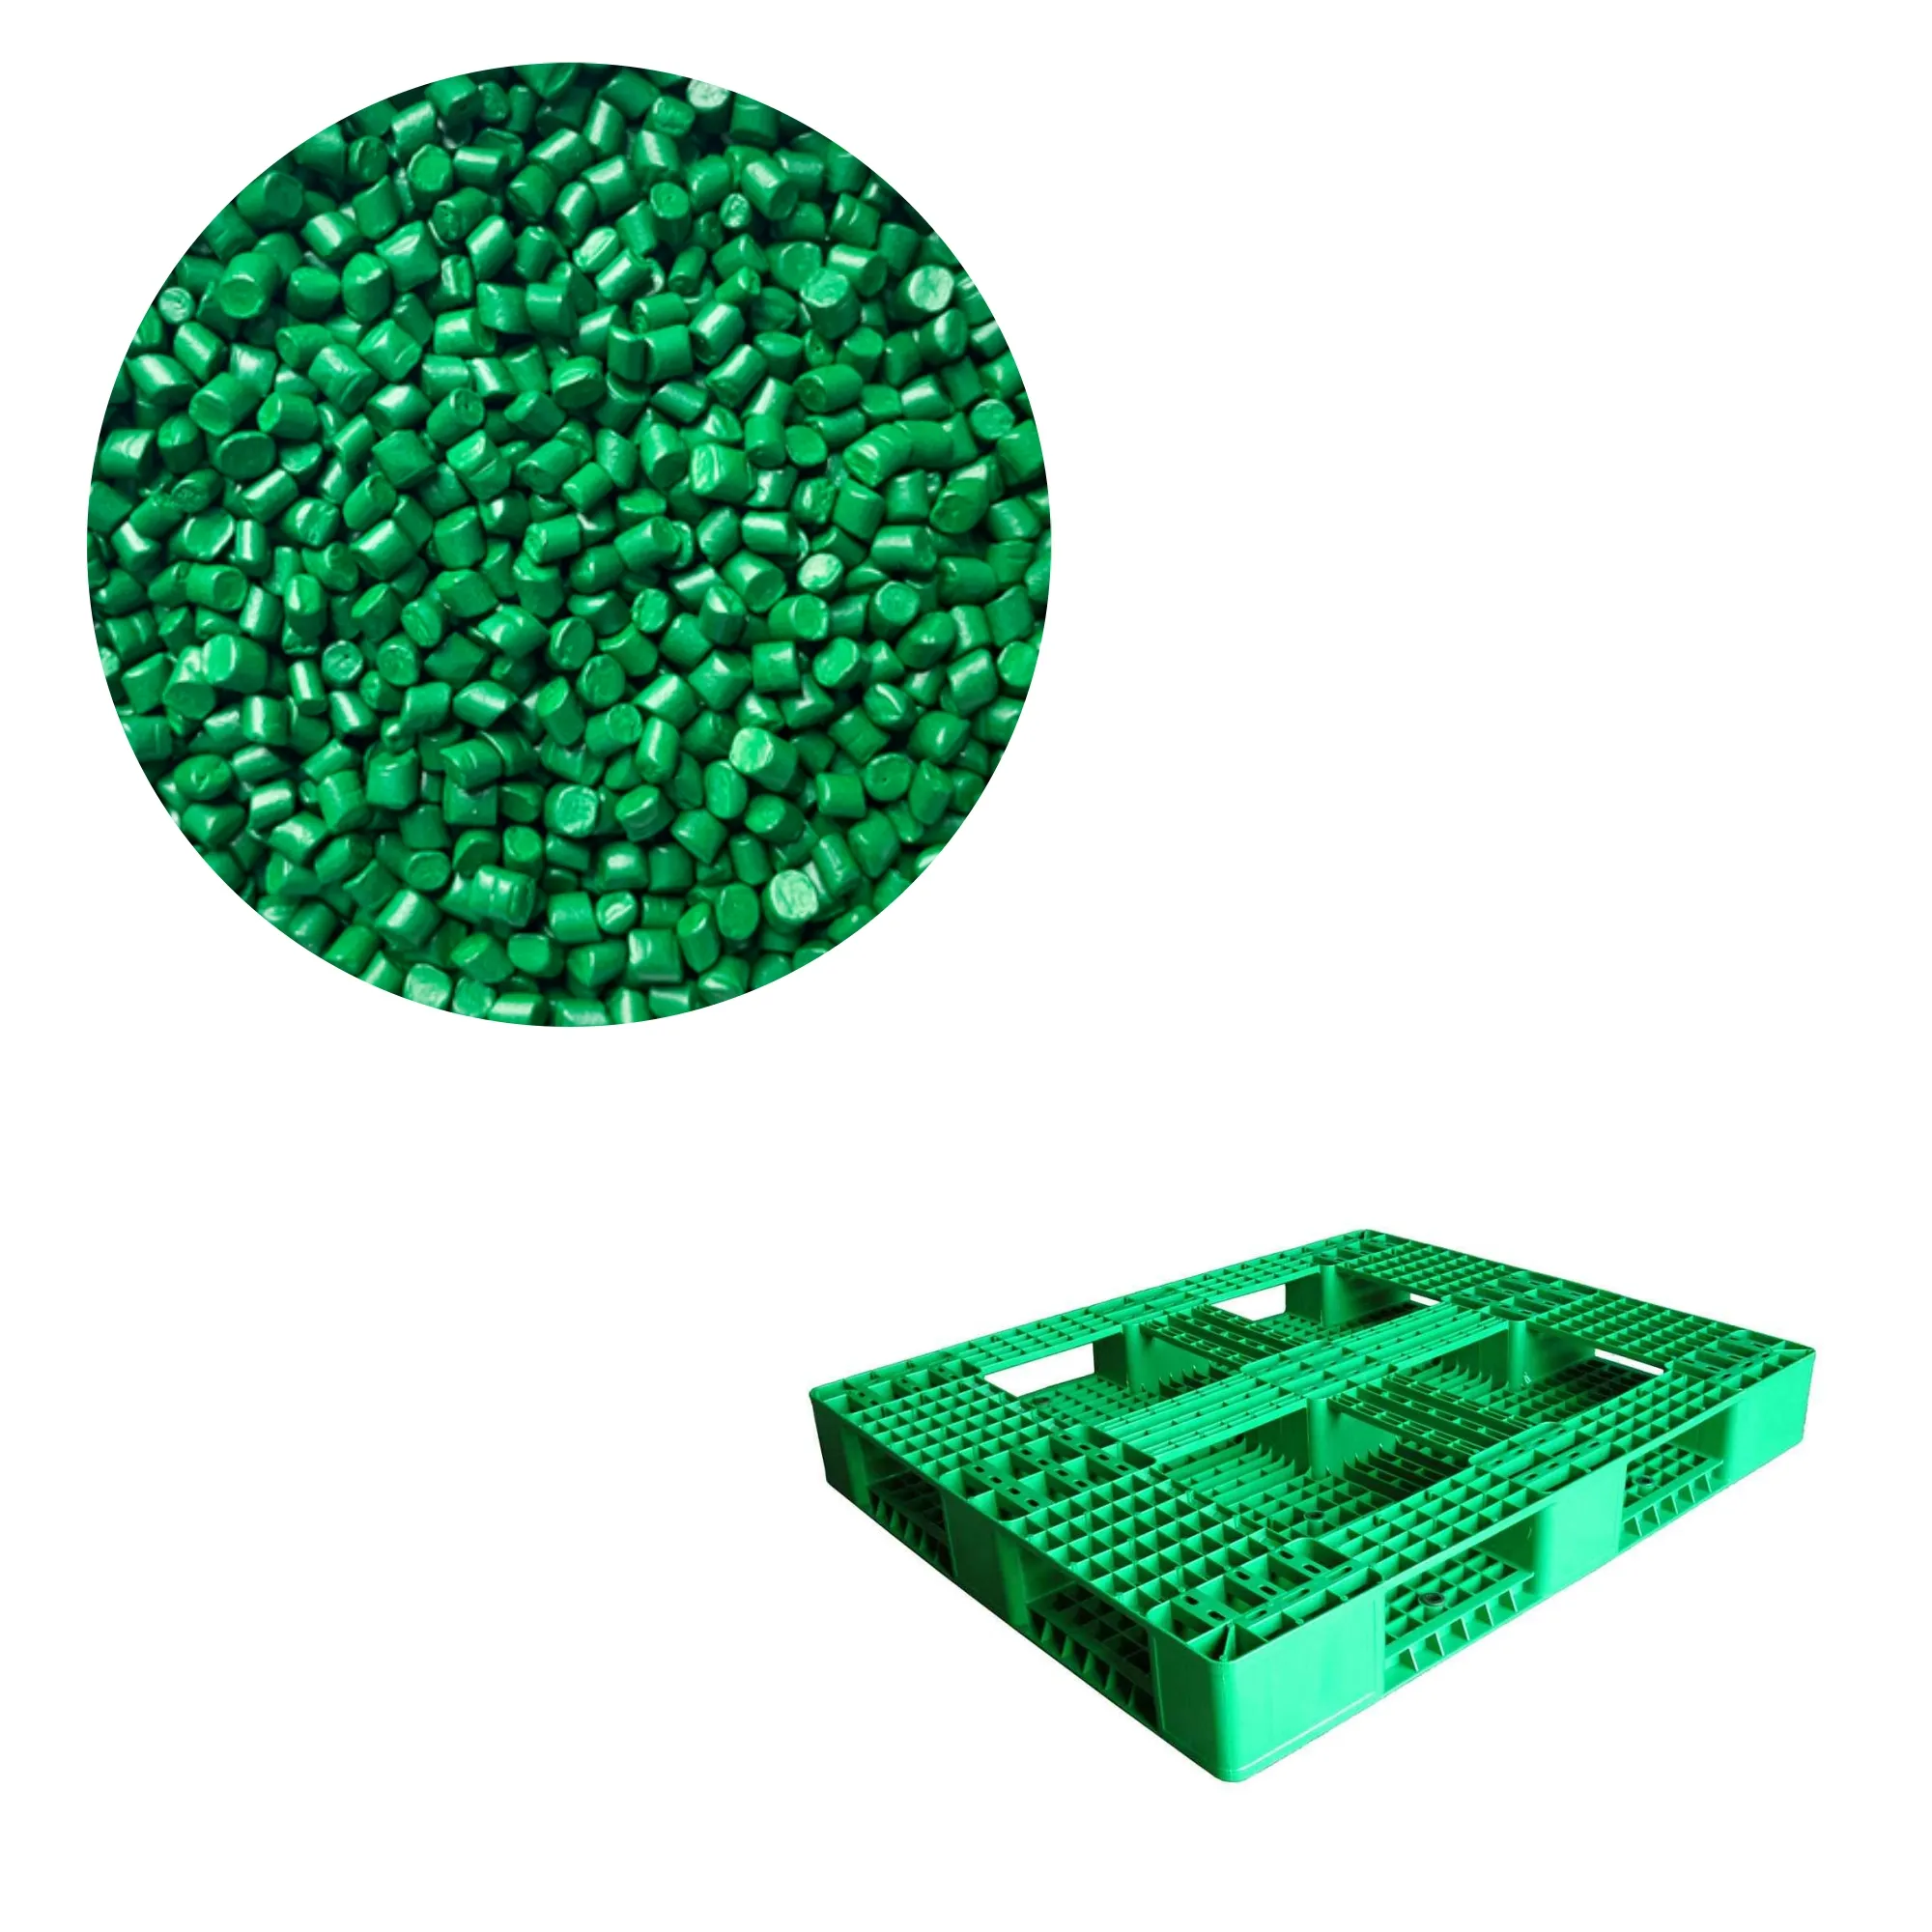 하이 퀄리티 HDPE LLDPE PP 펠릿 공장 가격의 녹색 플라스틱 트레이 용 녹색 마스터 배치 플라스틱 입자